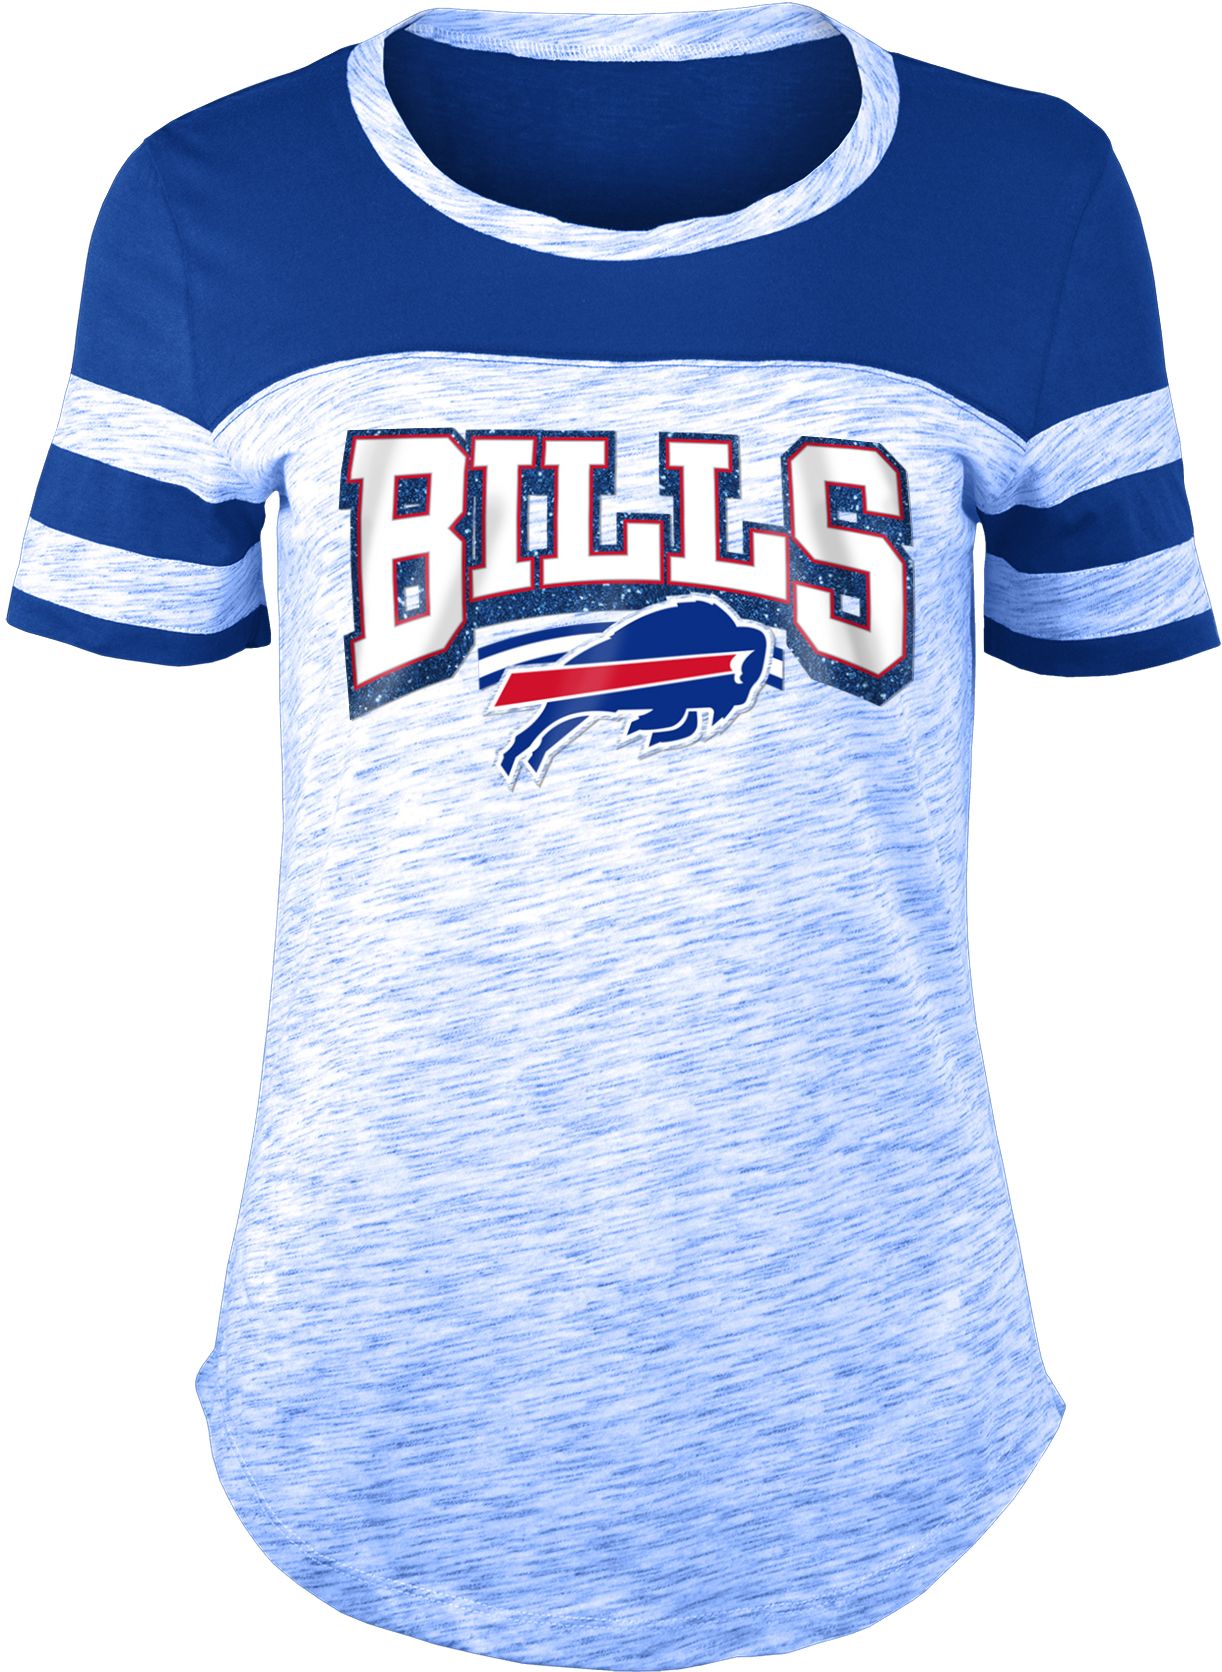 buffalo bills women's shirt